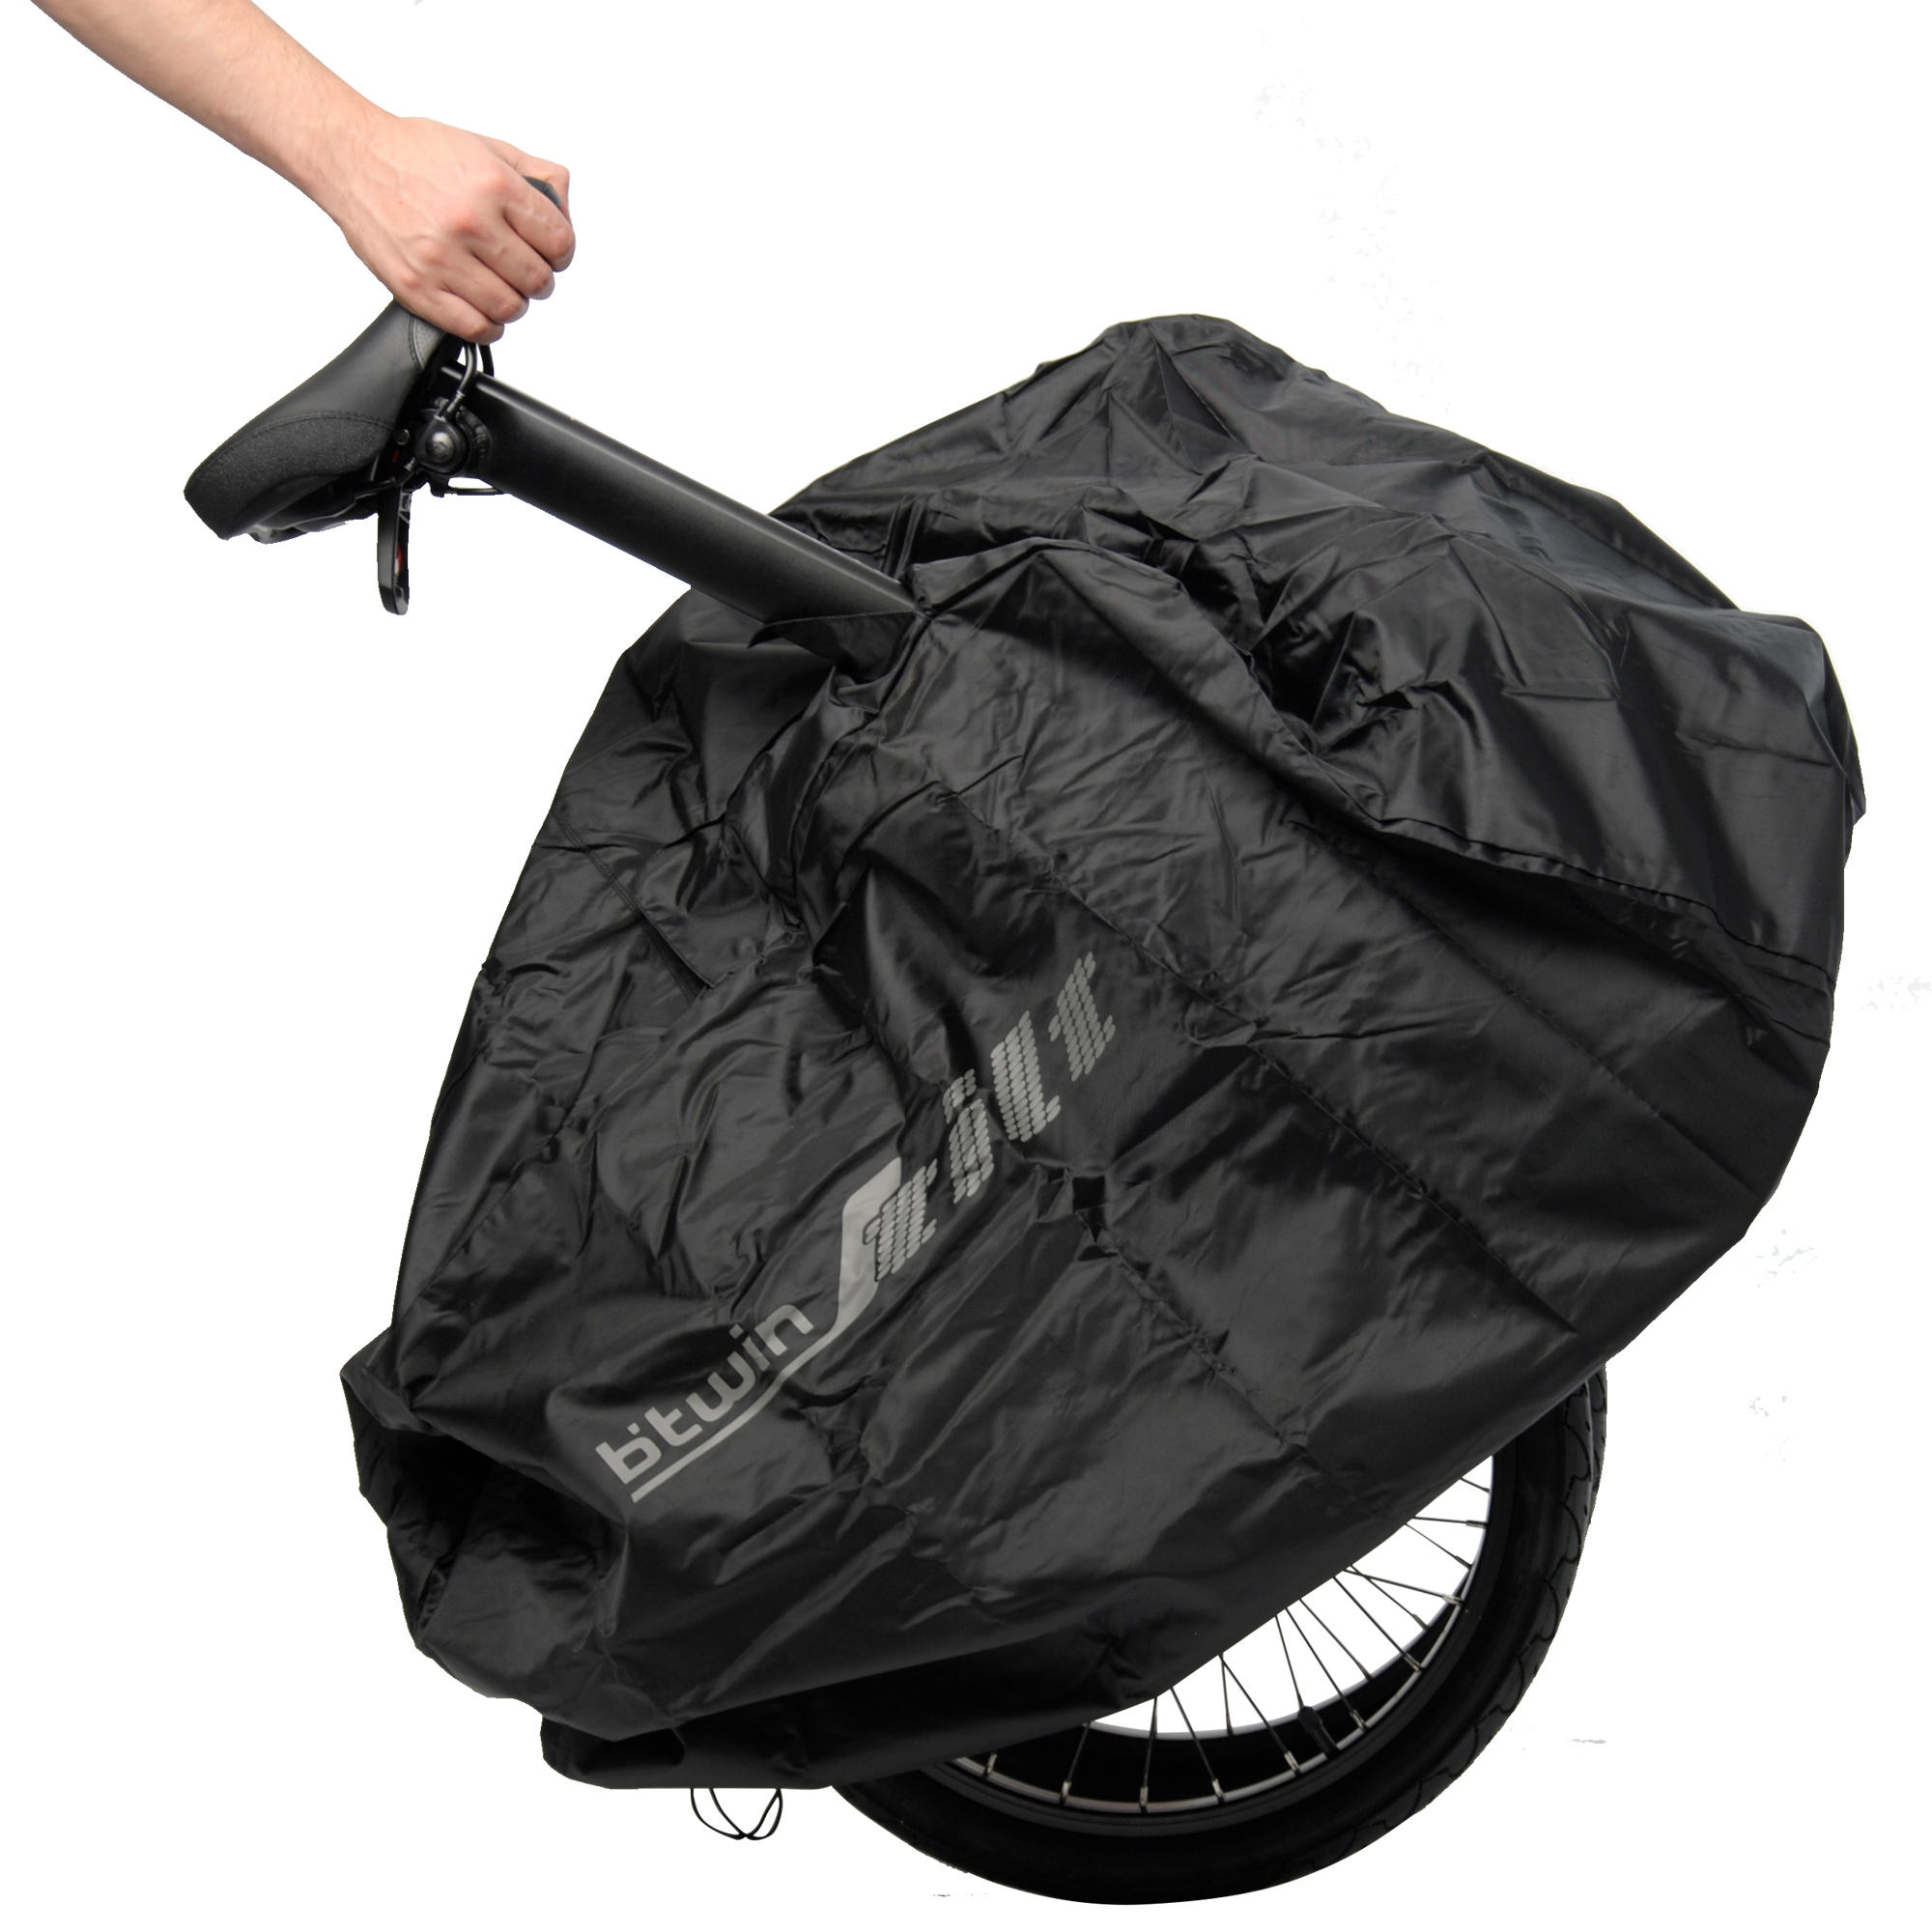 bike protection bag